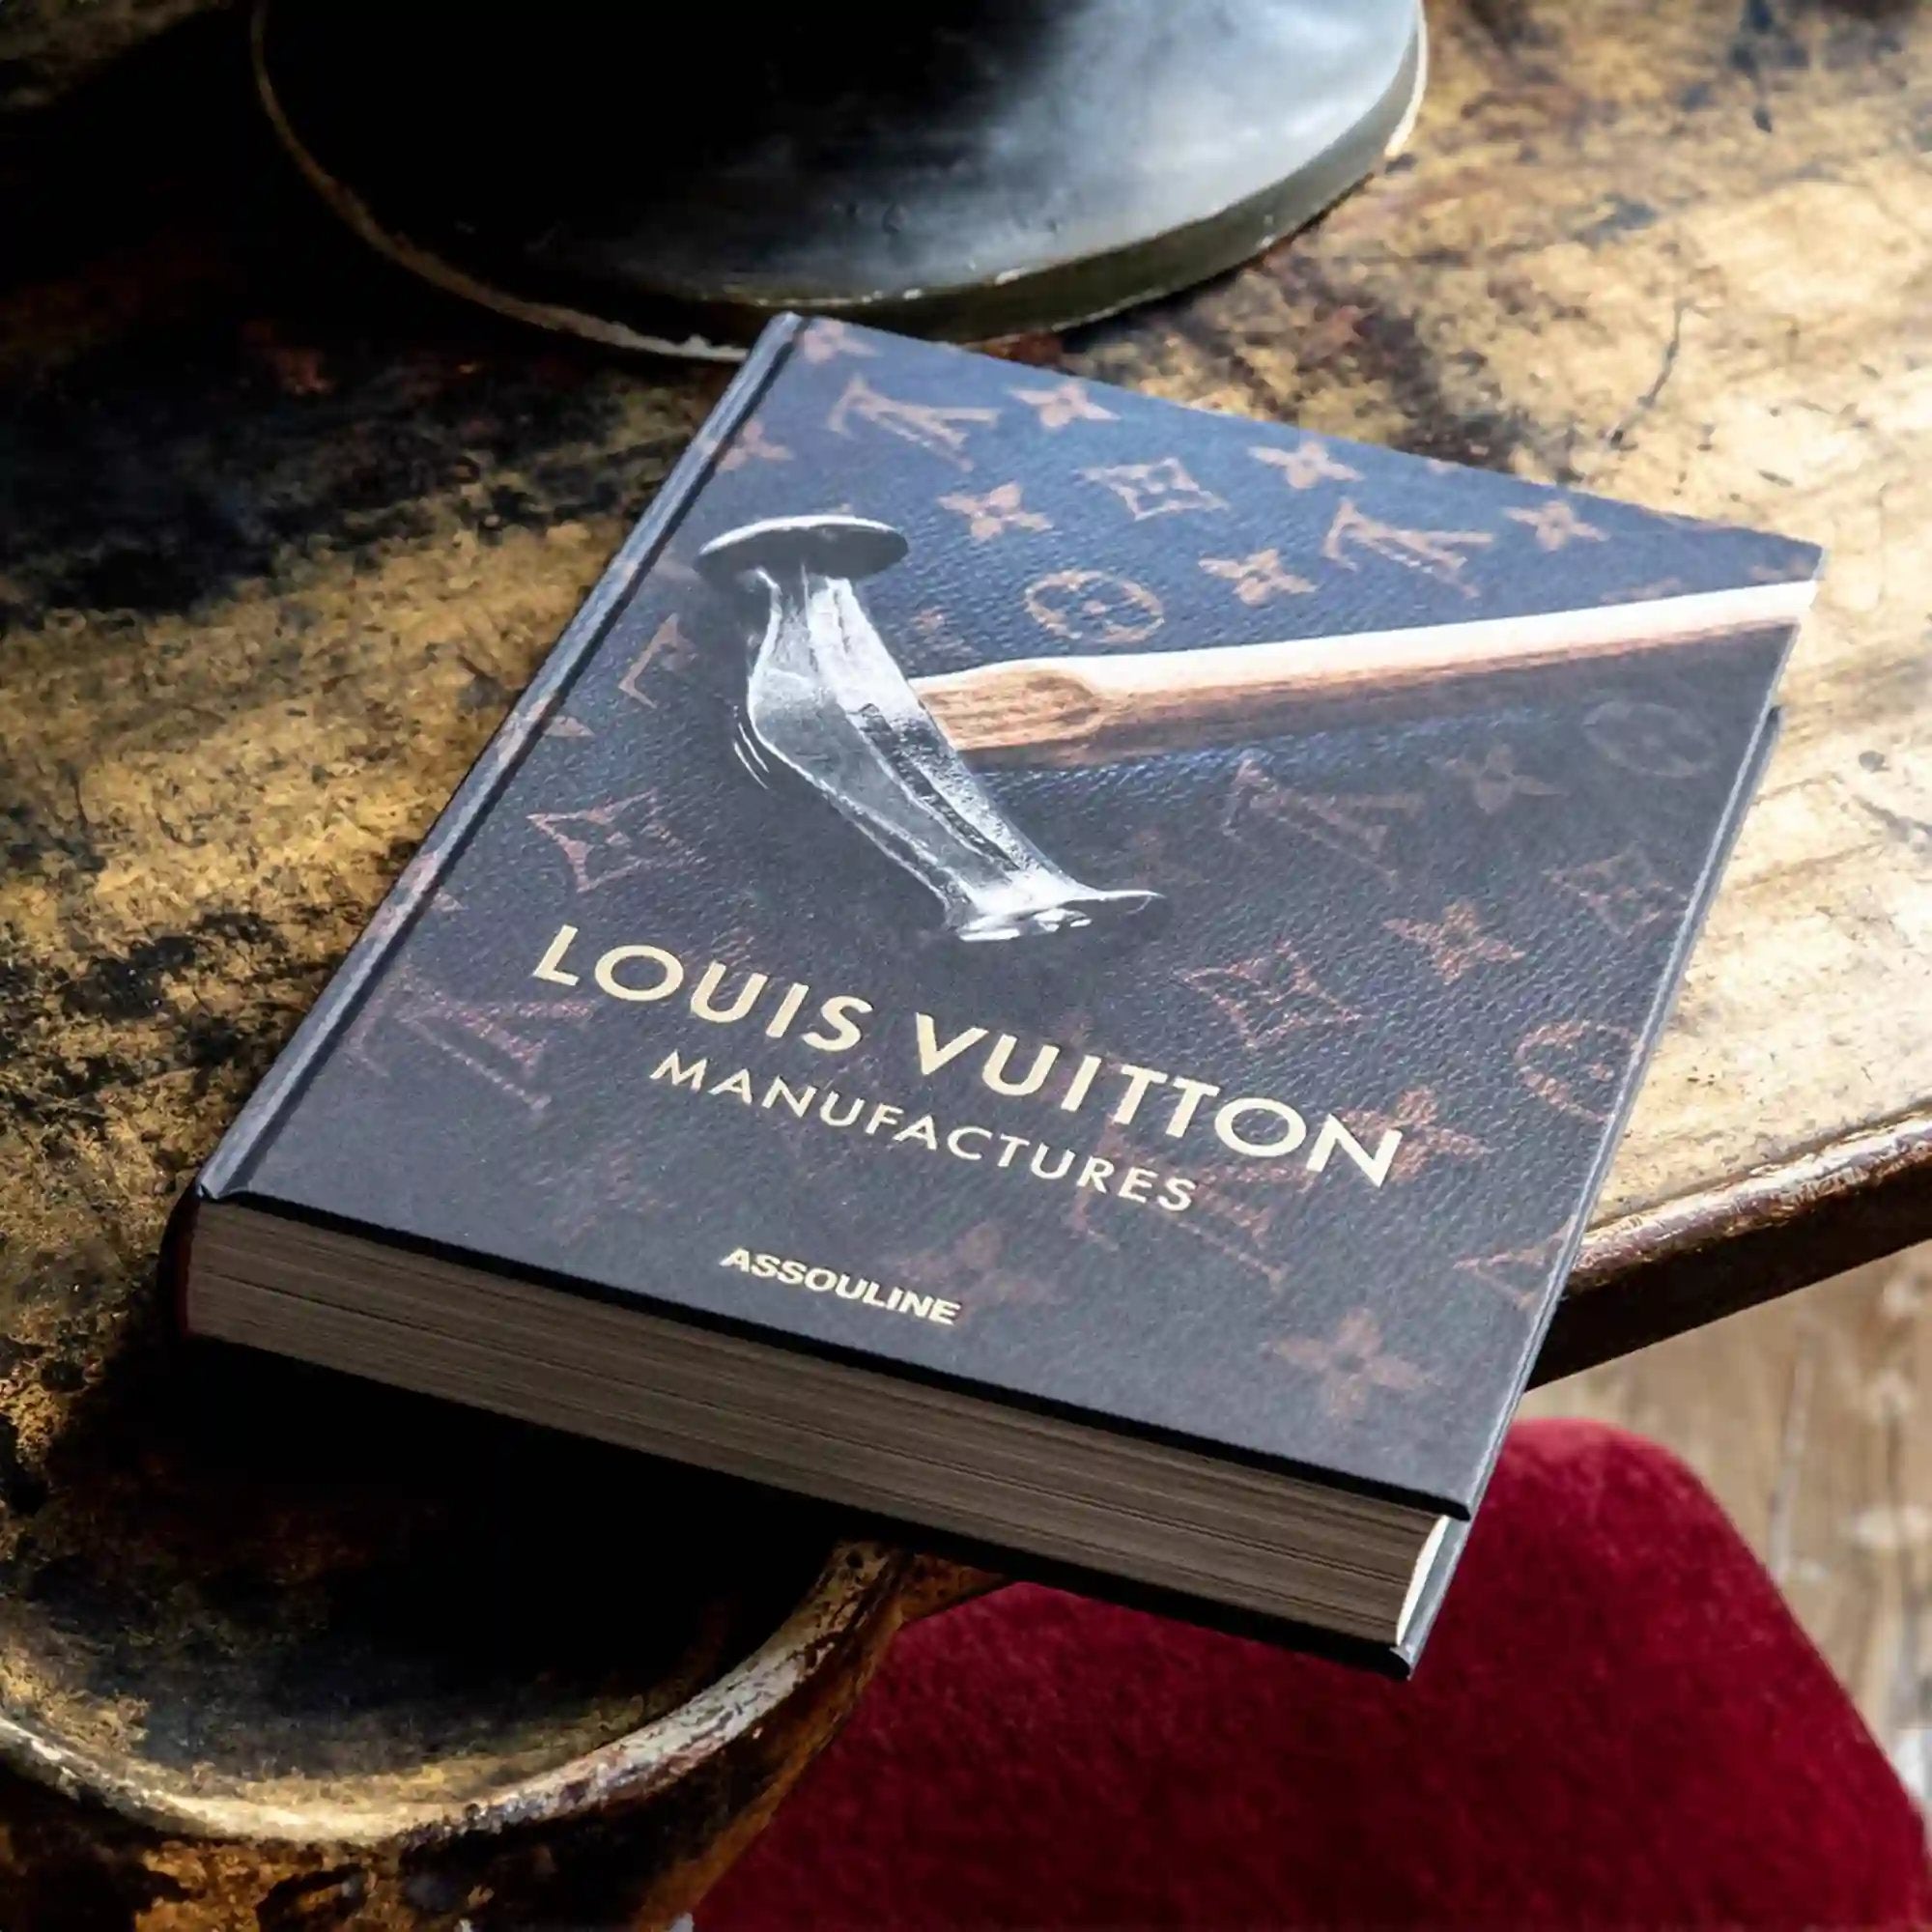 كتاب مصانع لويس فويتون